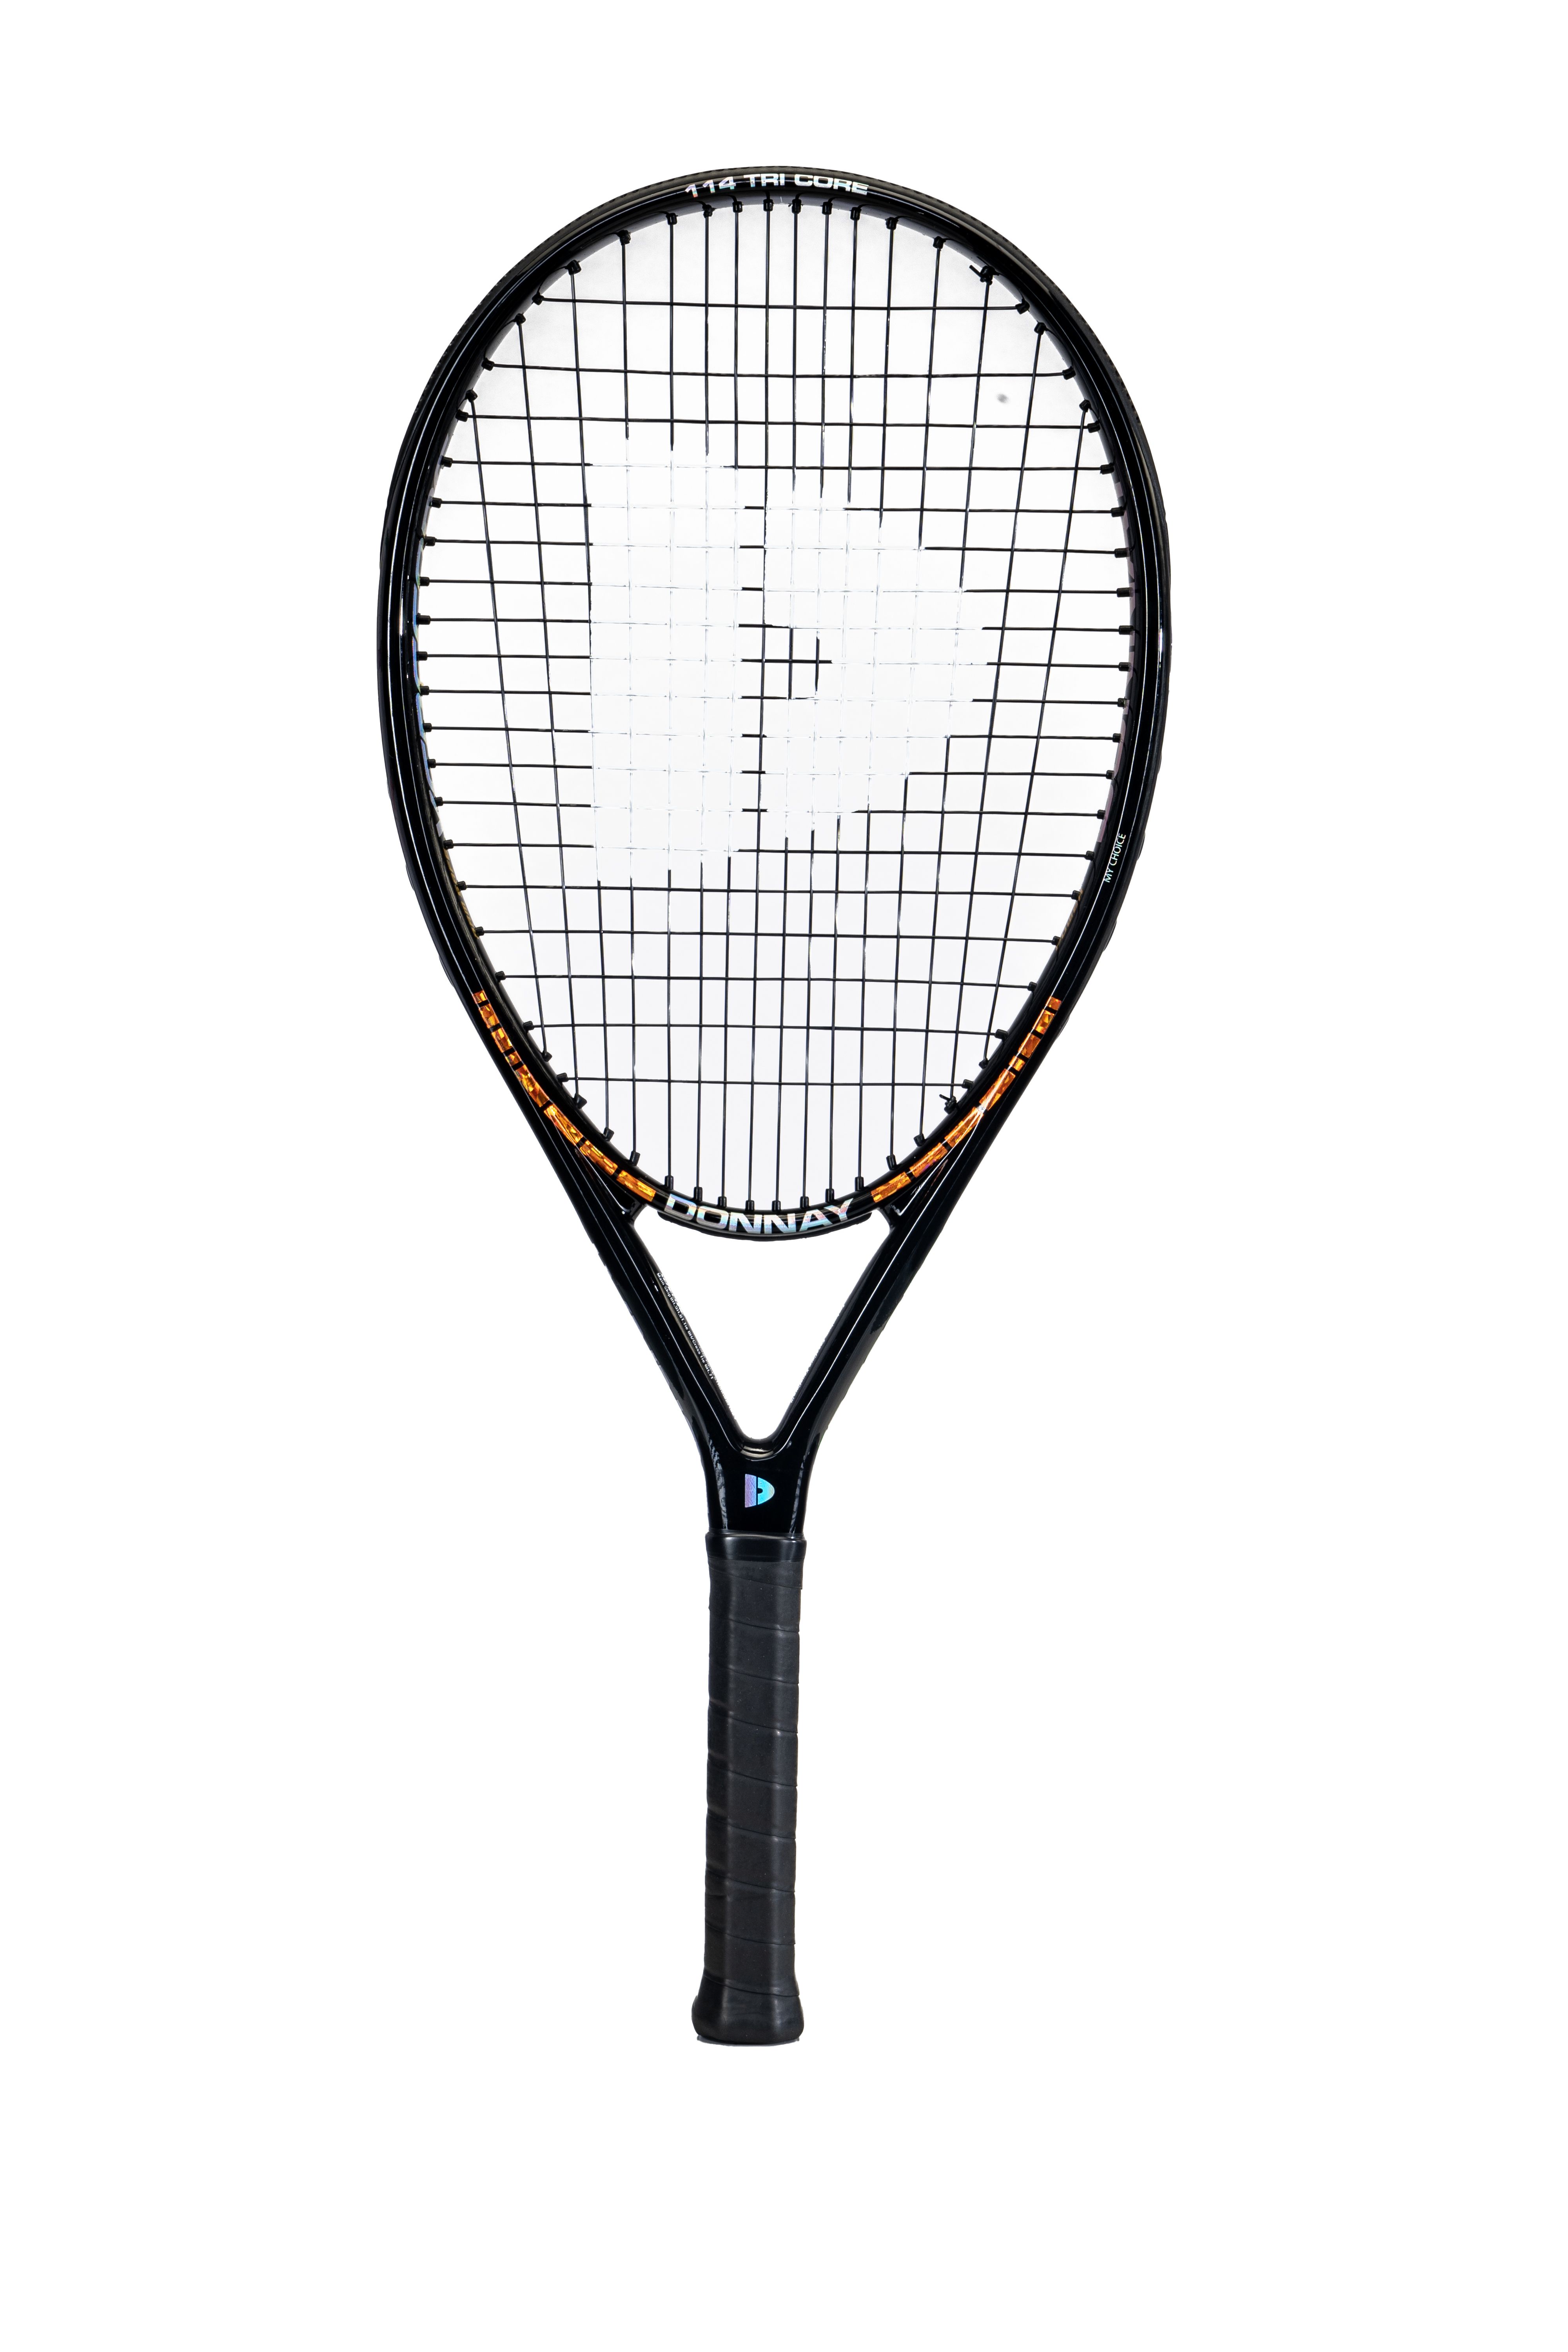 DONNAY Superlite 114 Tennis Racquet - strung